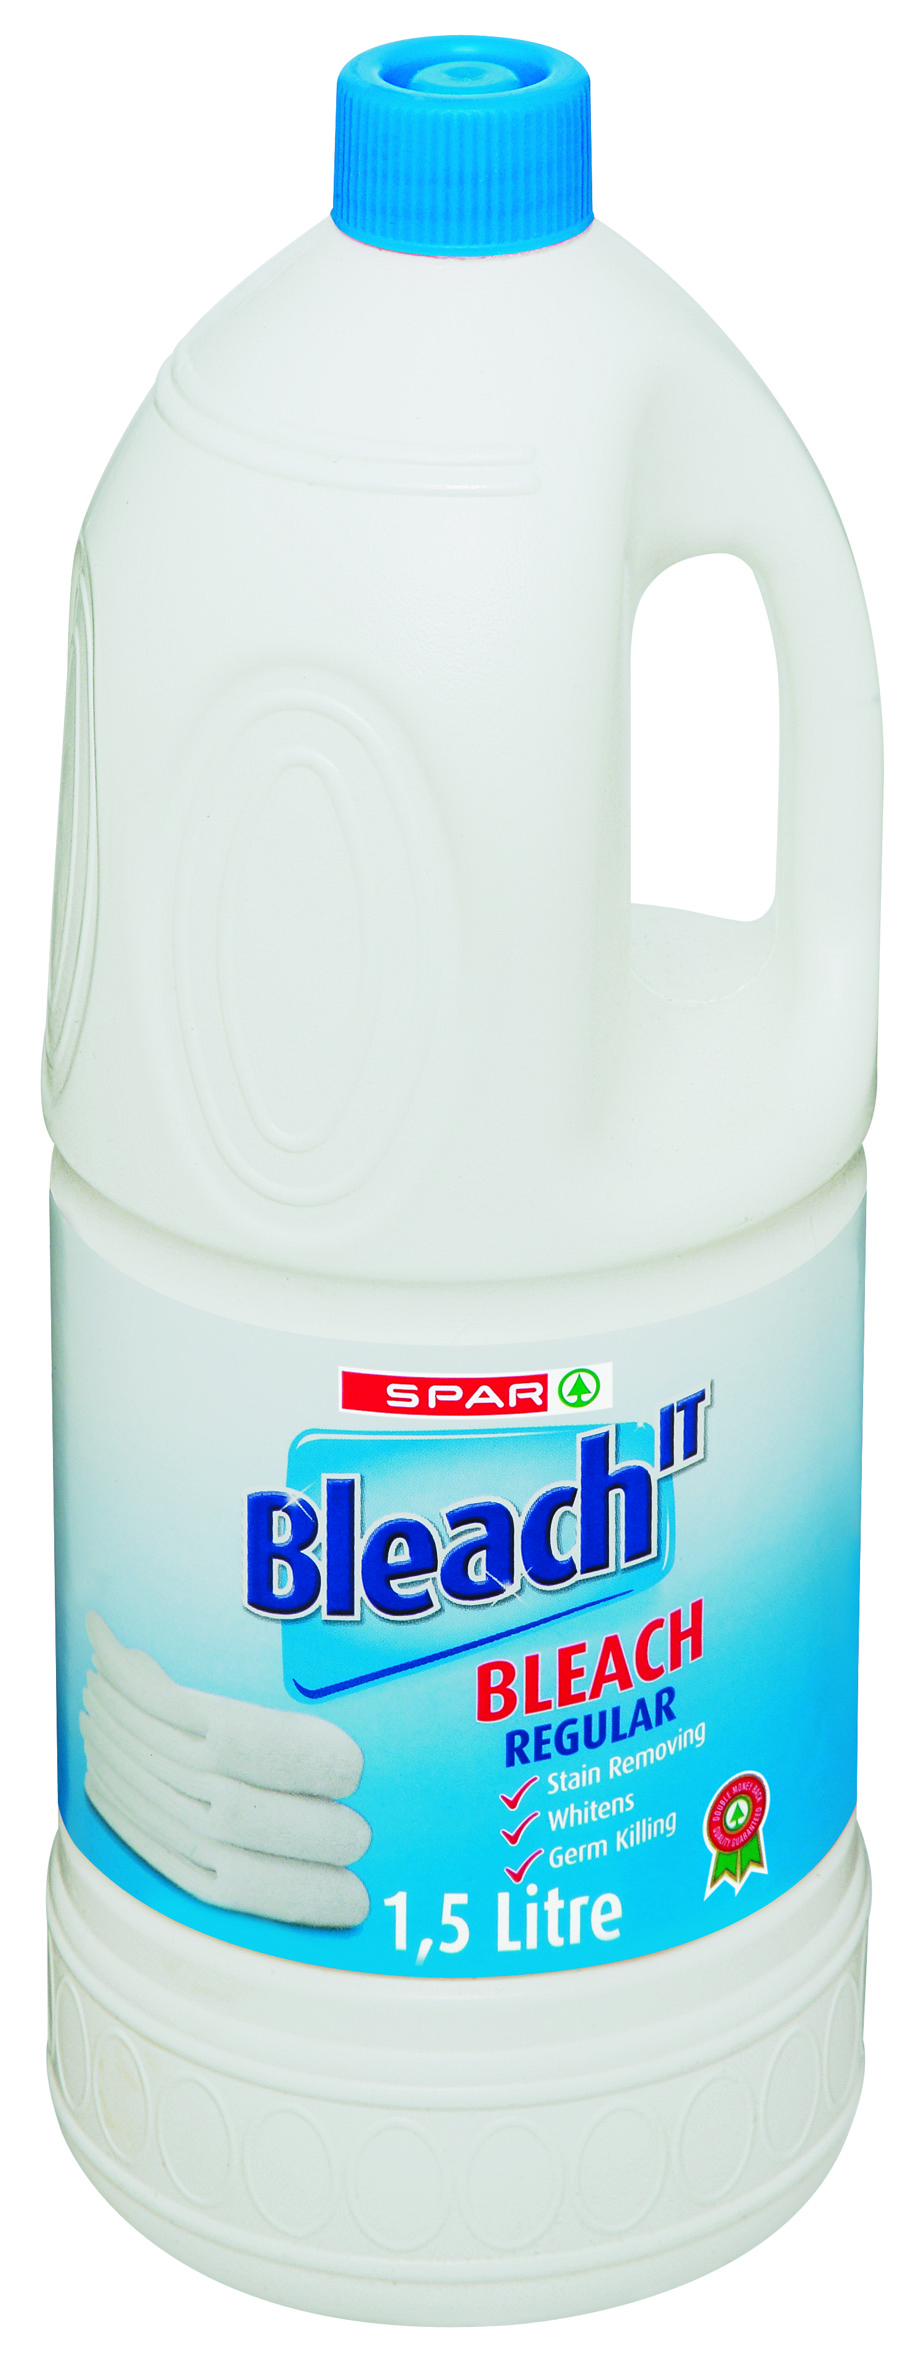 bleach regular